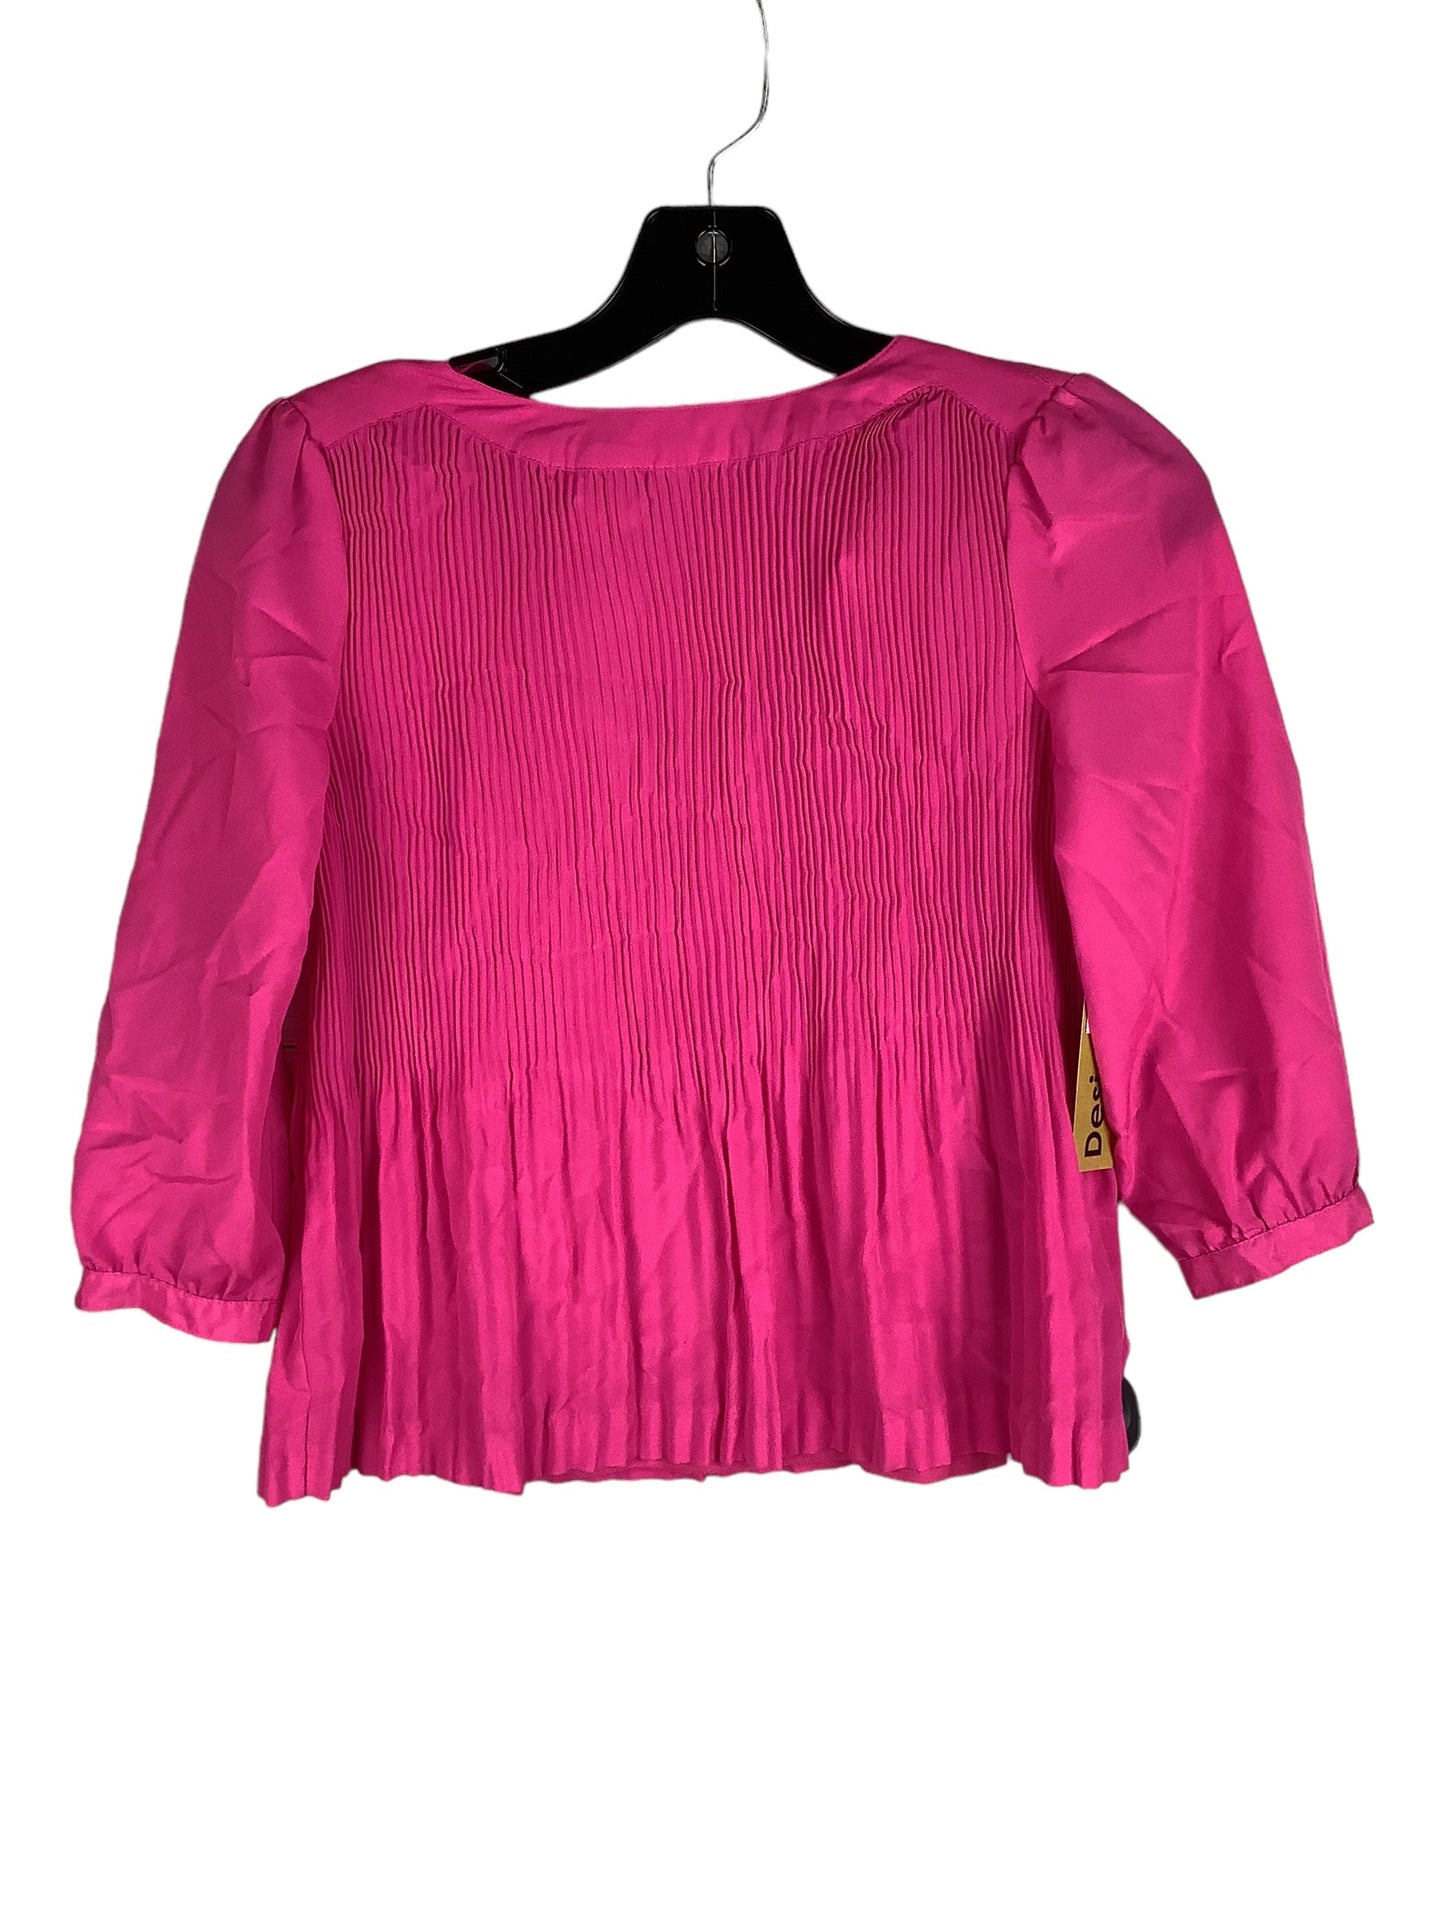 Pink Top Long Sleeve Designer Ted Baker, Size S